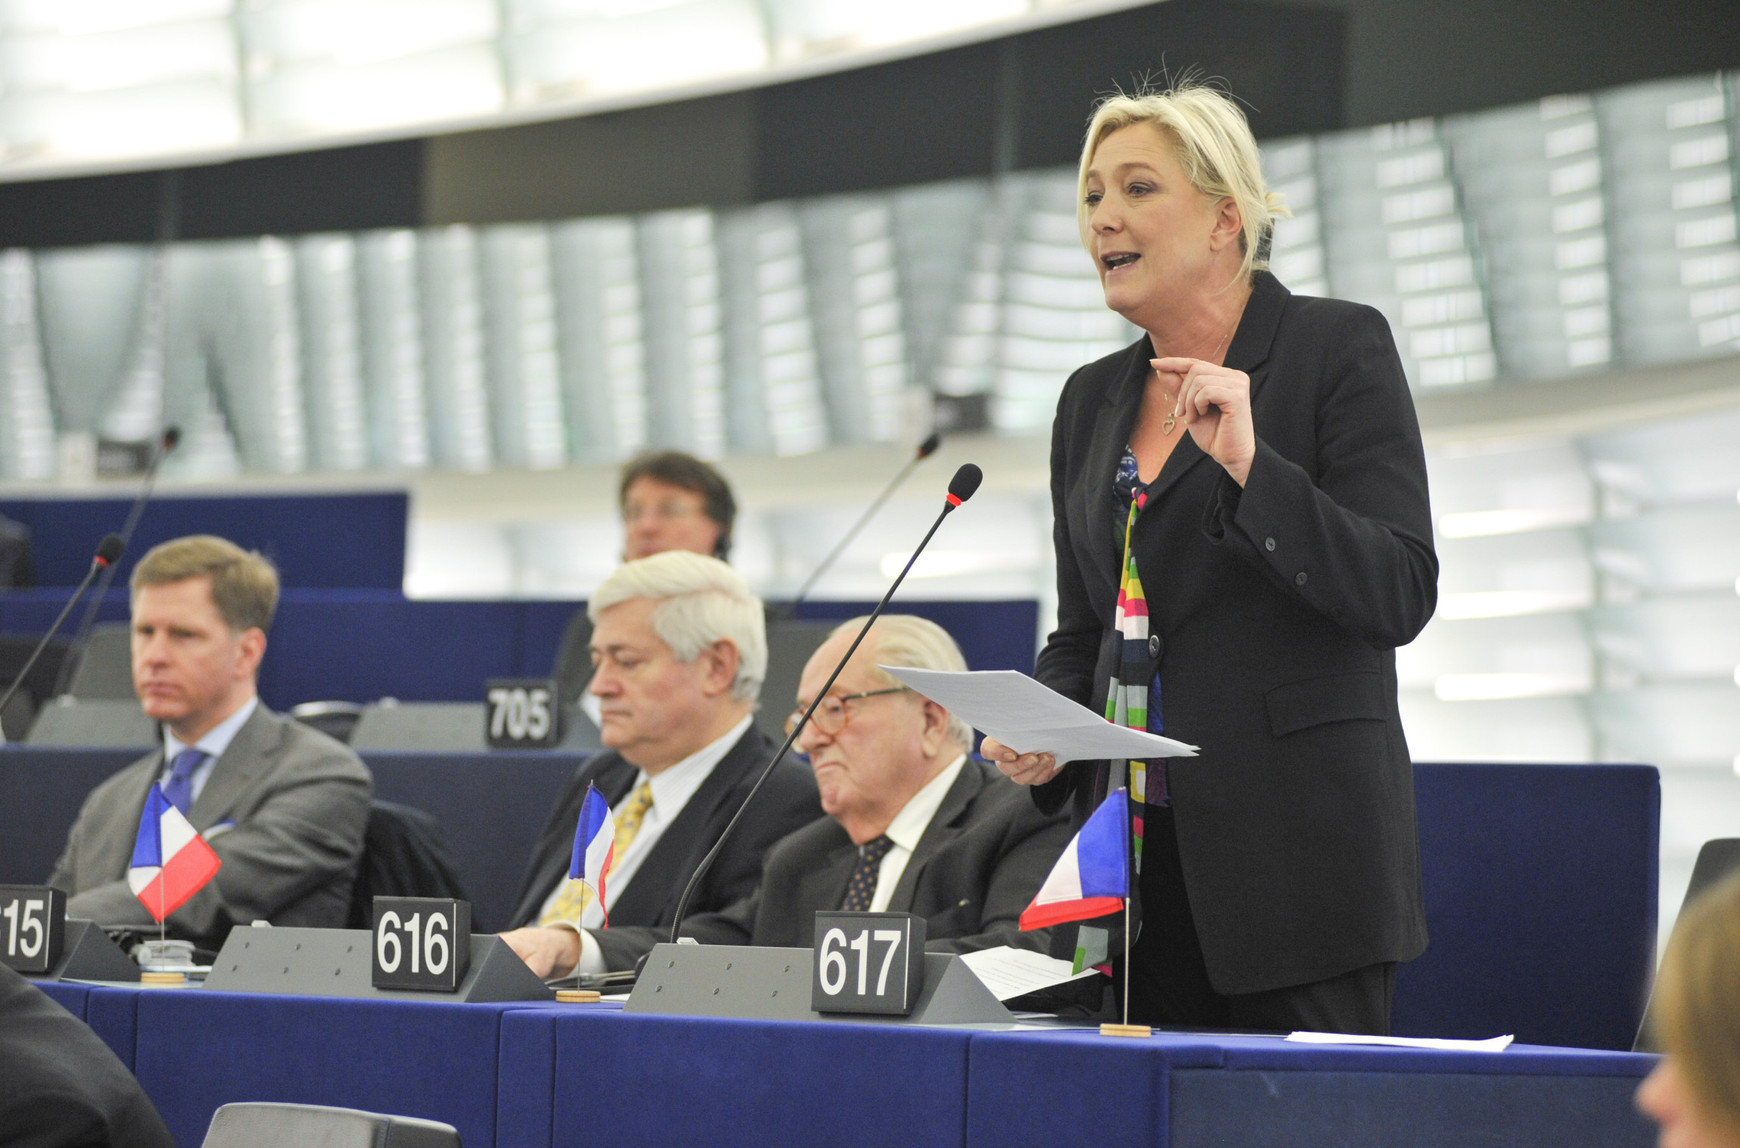 Marine Le Pen et son père Jean-Marie Le Pen au Parlement européen © European Union 2013 EP - Michel Christen Comment ne pas devenir lepéniste